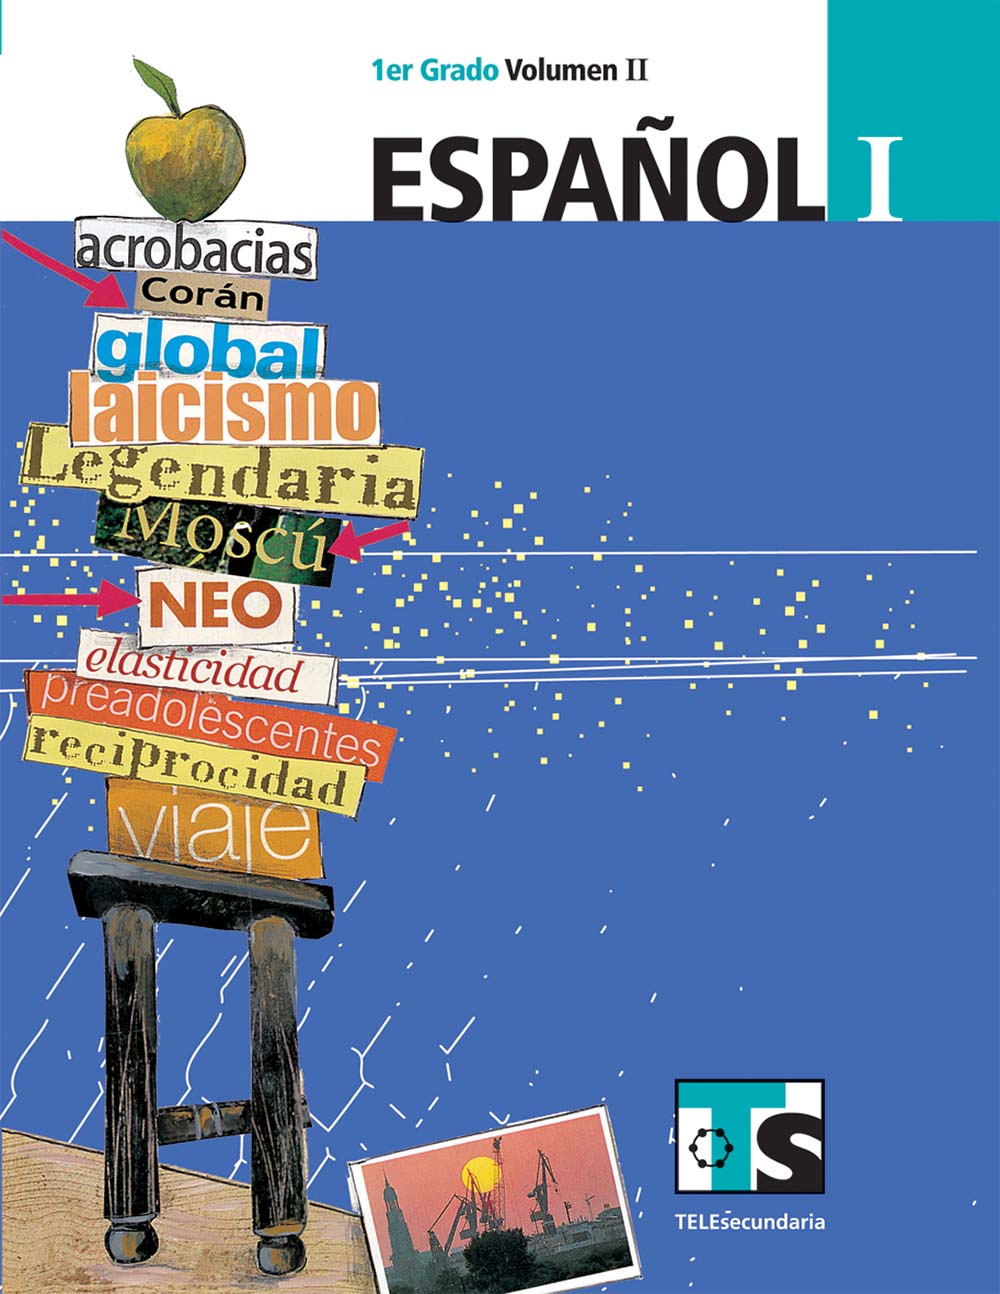 Español I. Volumen II, Editorial: Secretaría de Educación Pública, Nivel: Telesecundaria, Grado: 1